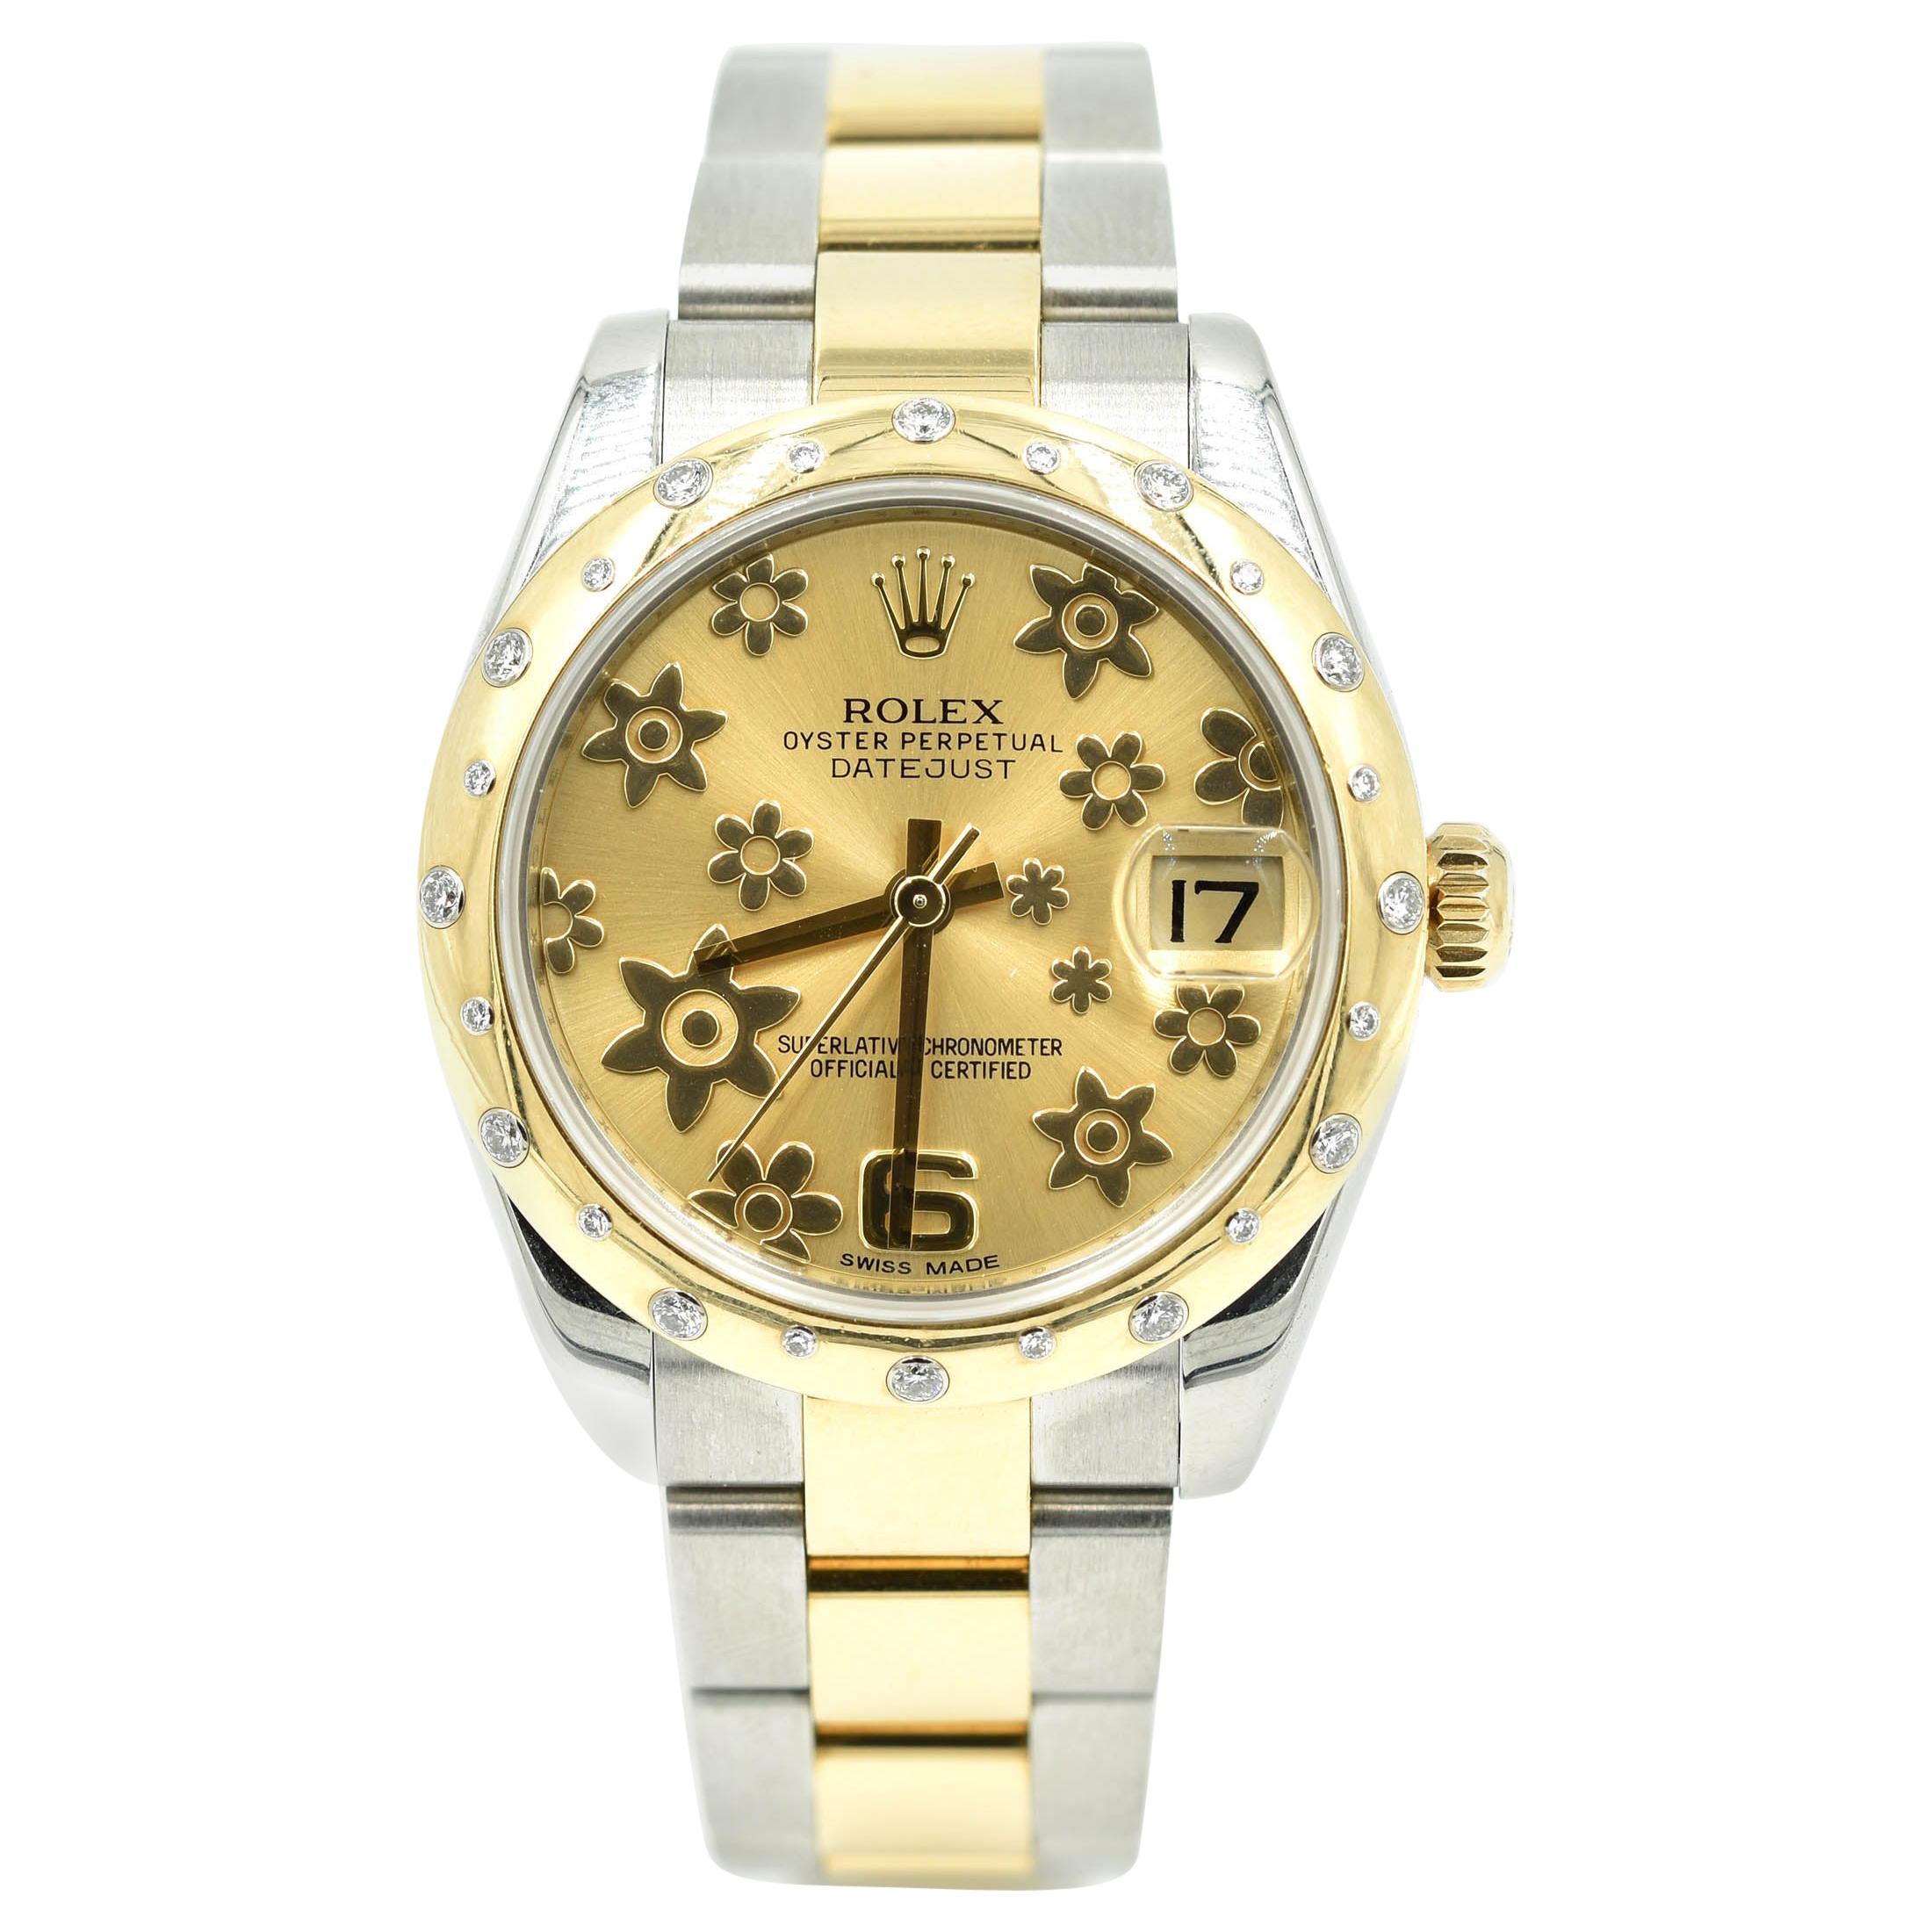 Rolex Datejust Midsize with Diamond Bezel Two-Tone 18 Karat Gold Watch 178343